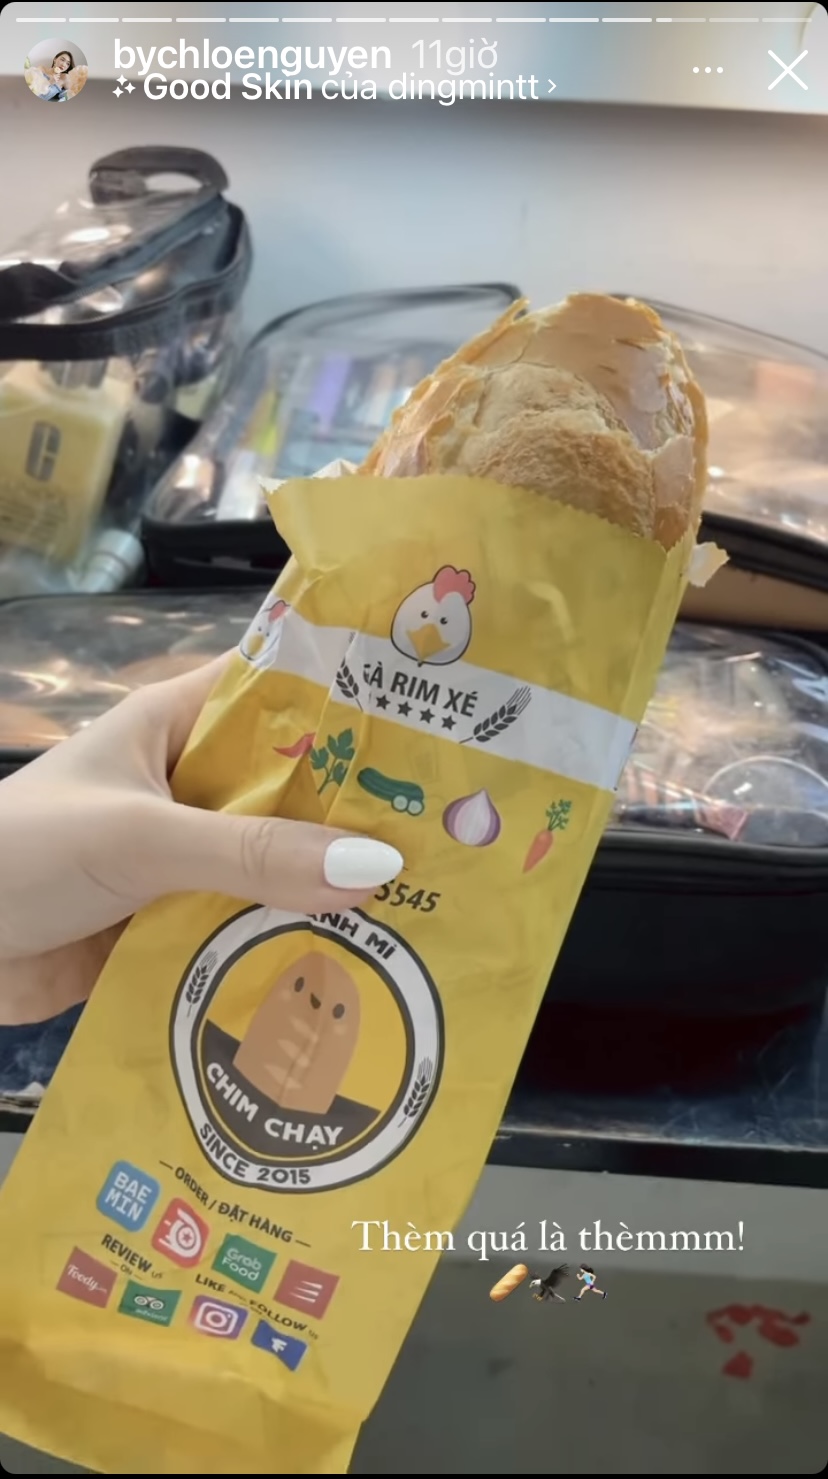 Vì đã quá thèm nên beauty blogger Chloe Nguyễn đã nhanh tay order ngay một chiếc bánh mì gà rim xé về thưởng thức.